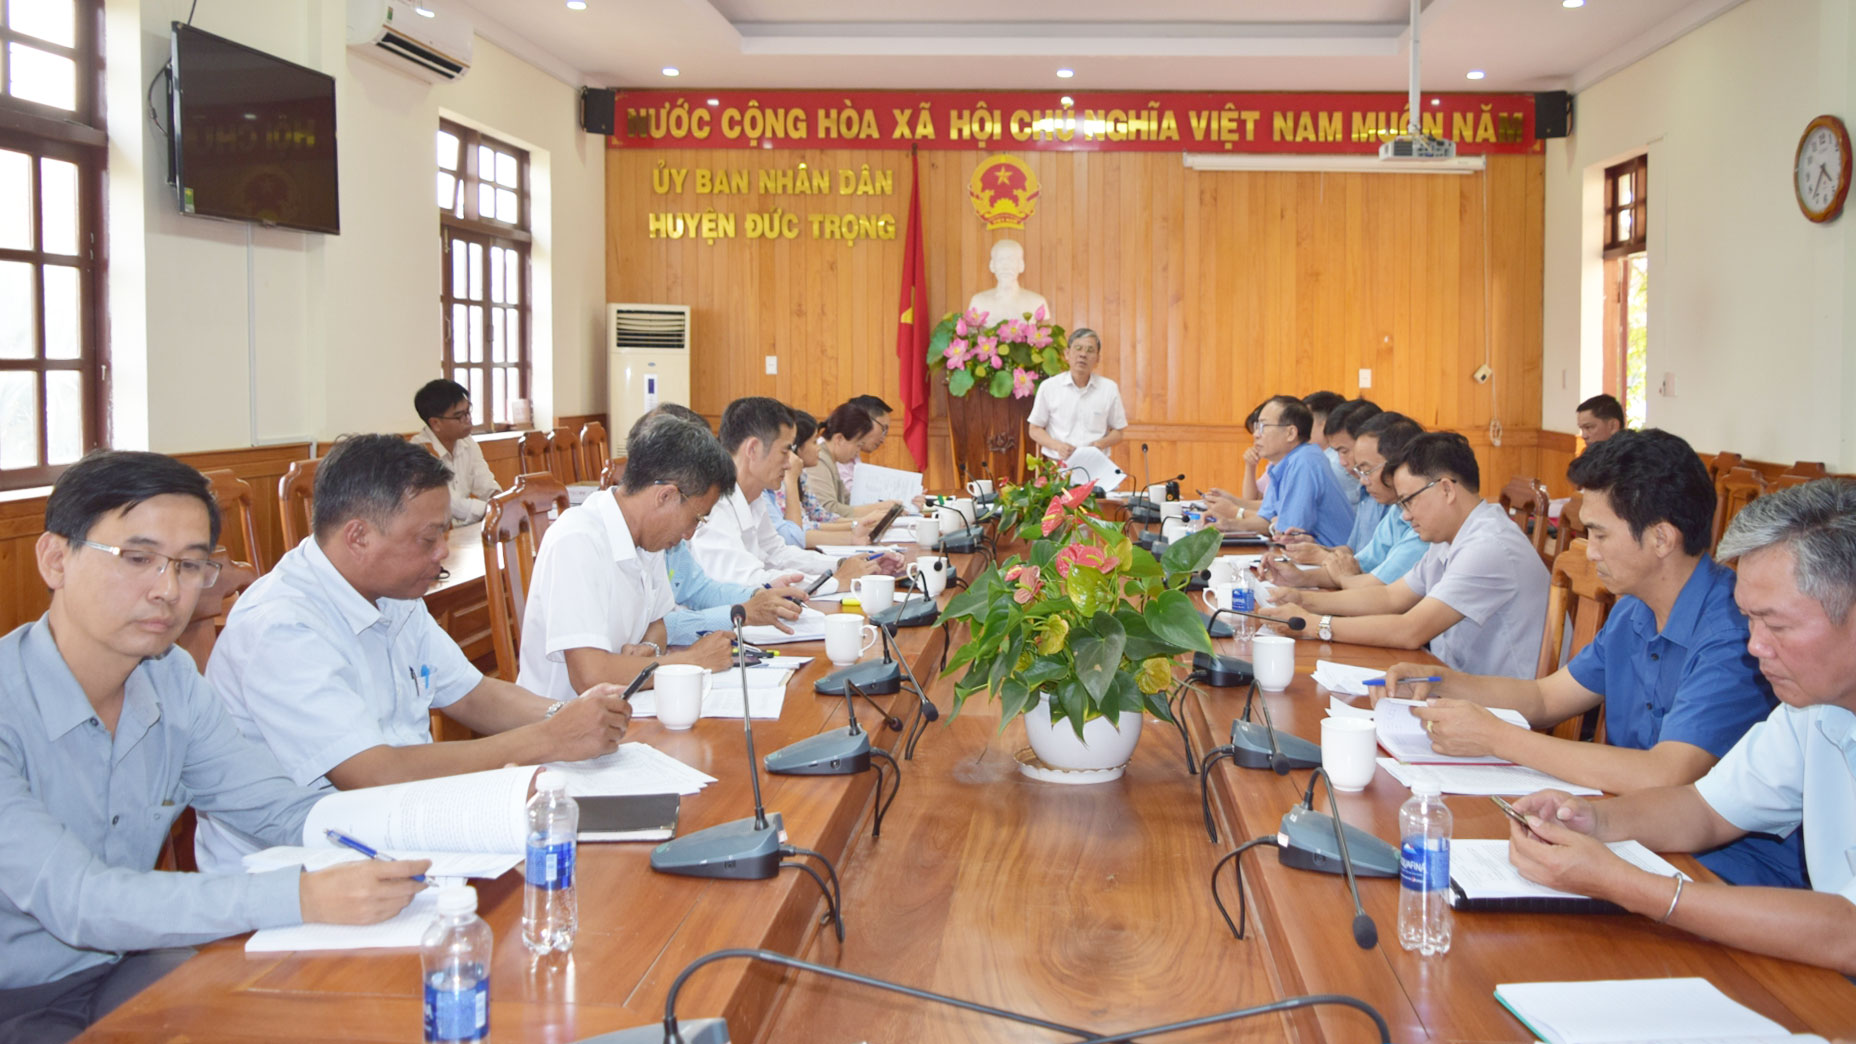 Đồng chí Nguyễn Văn Cường - Chủ tịch UBDN huyện, phát biểu kết luận hội nghị